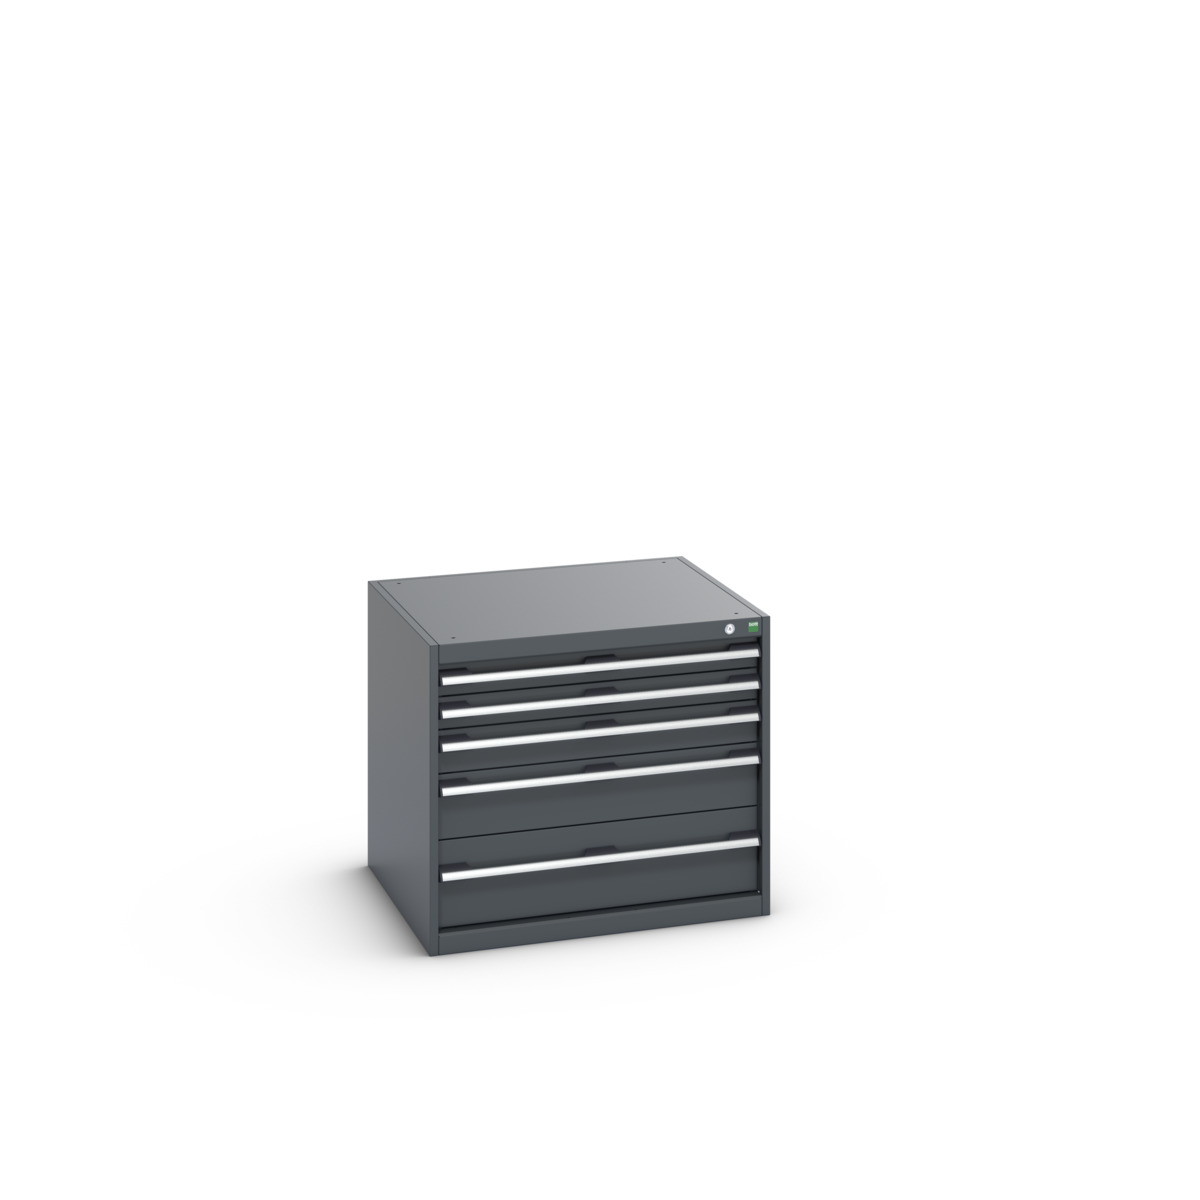 40028005.77V - cubio drawer cabinet